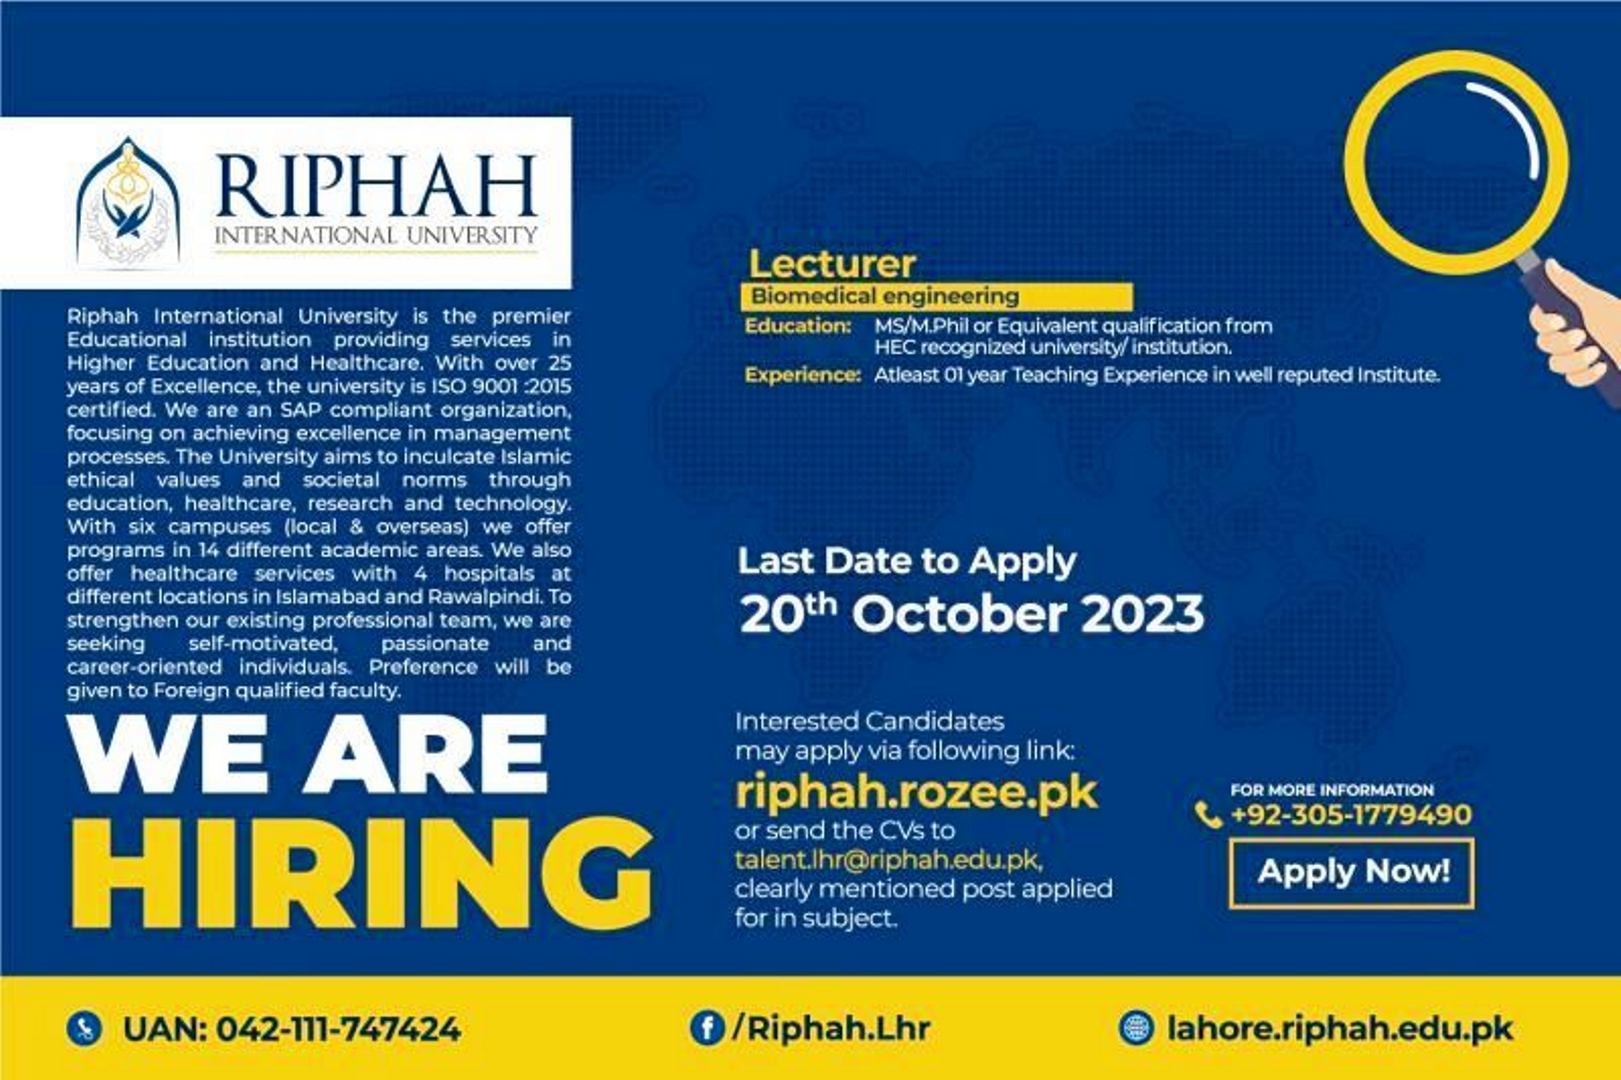  Riphah International University